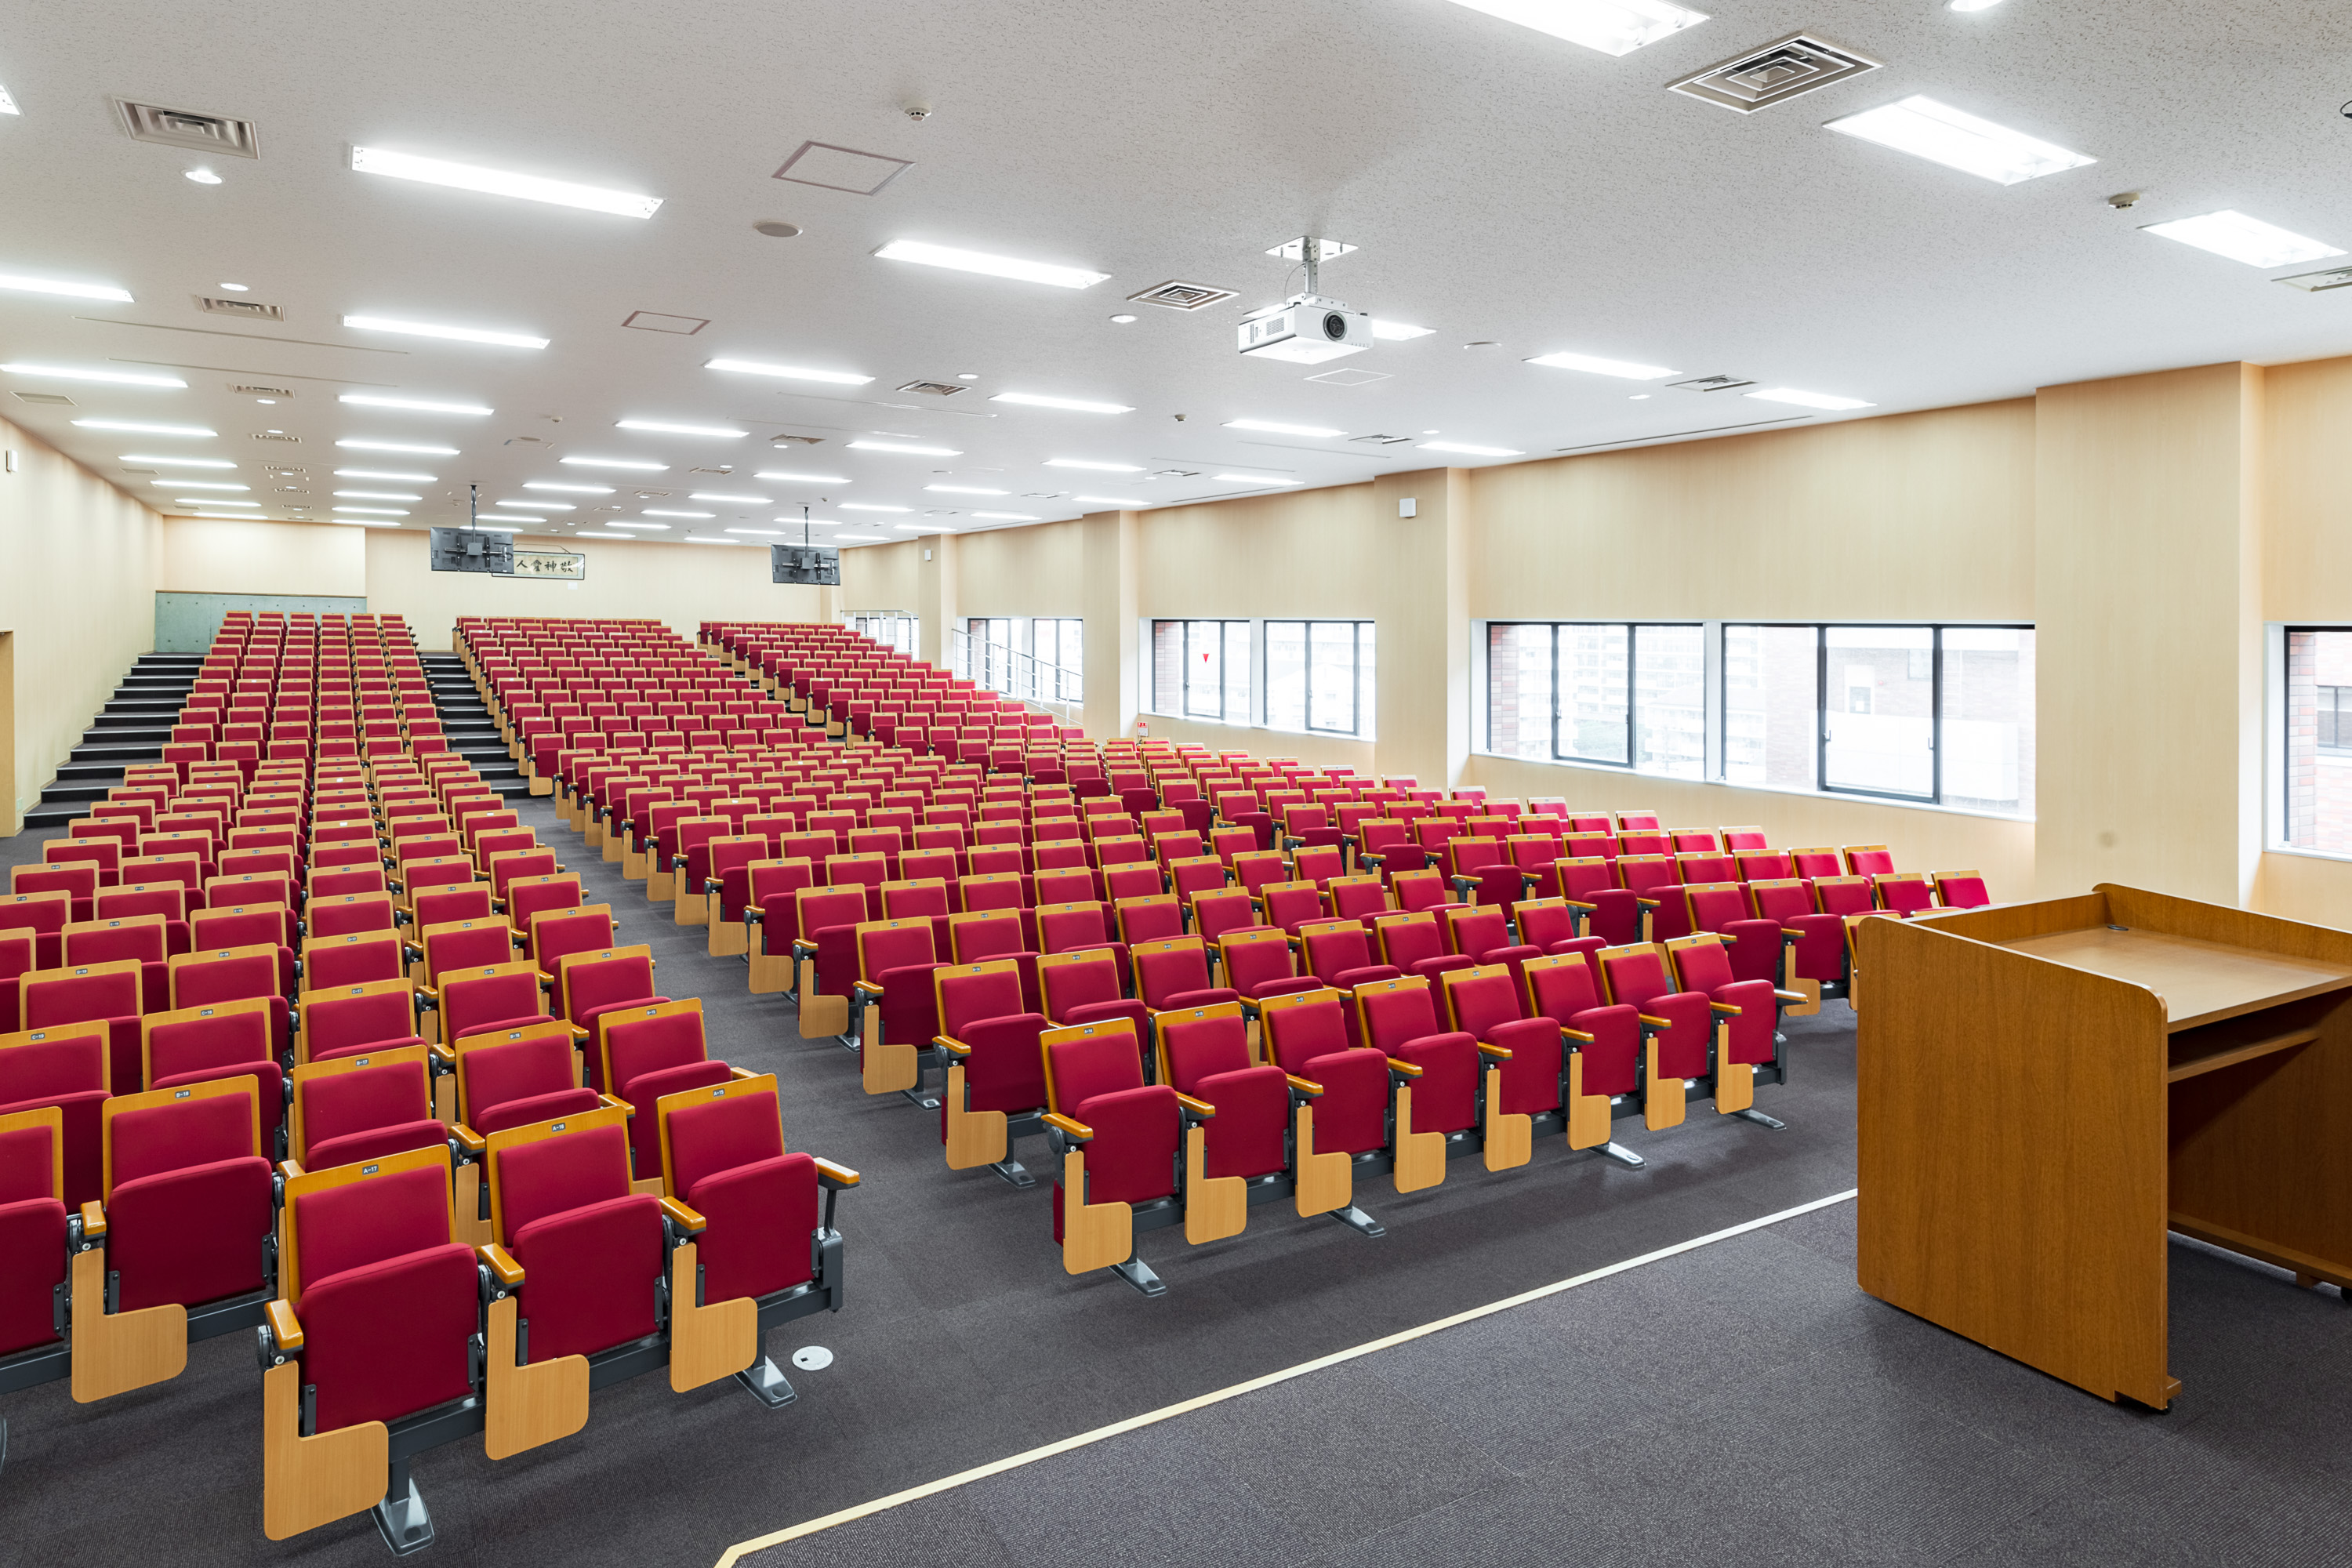 ［クラインホール］名古屋キャンパス（しろとり）翼館4階にある500人収容可能な多目的ホール。